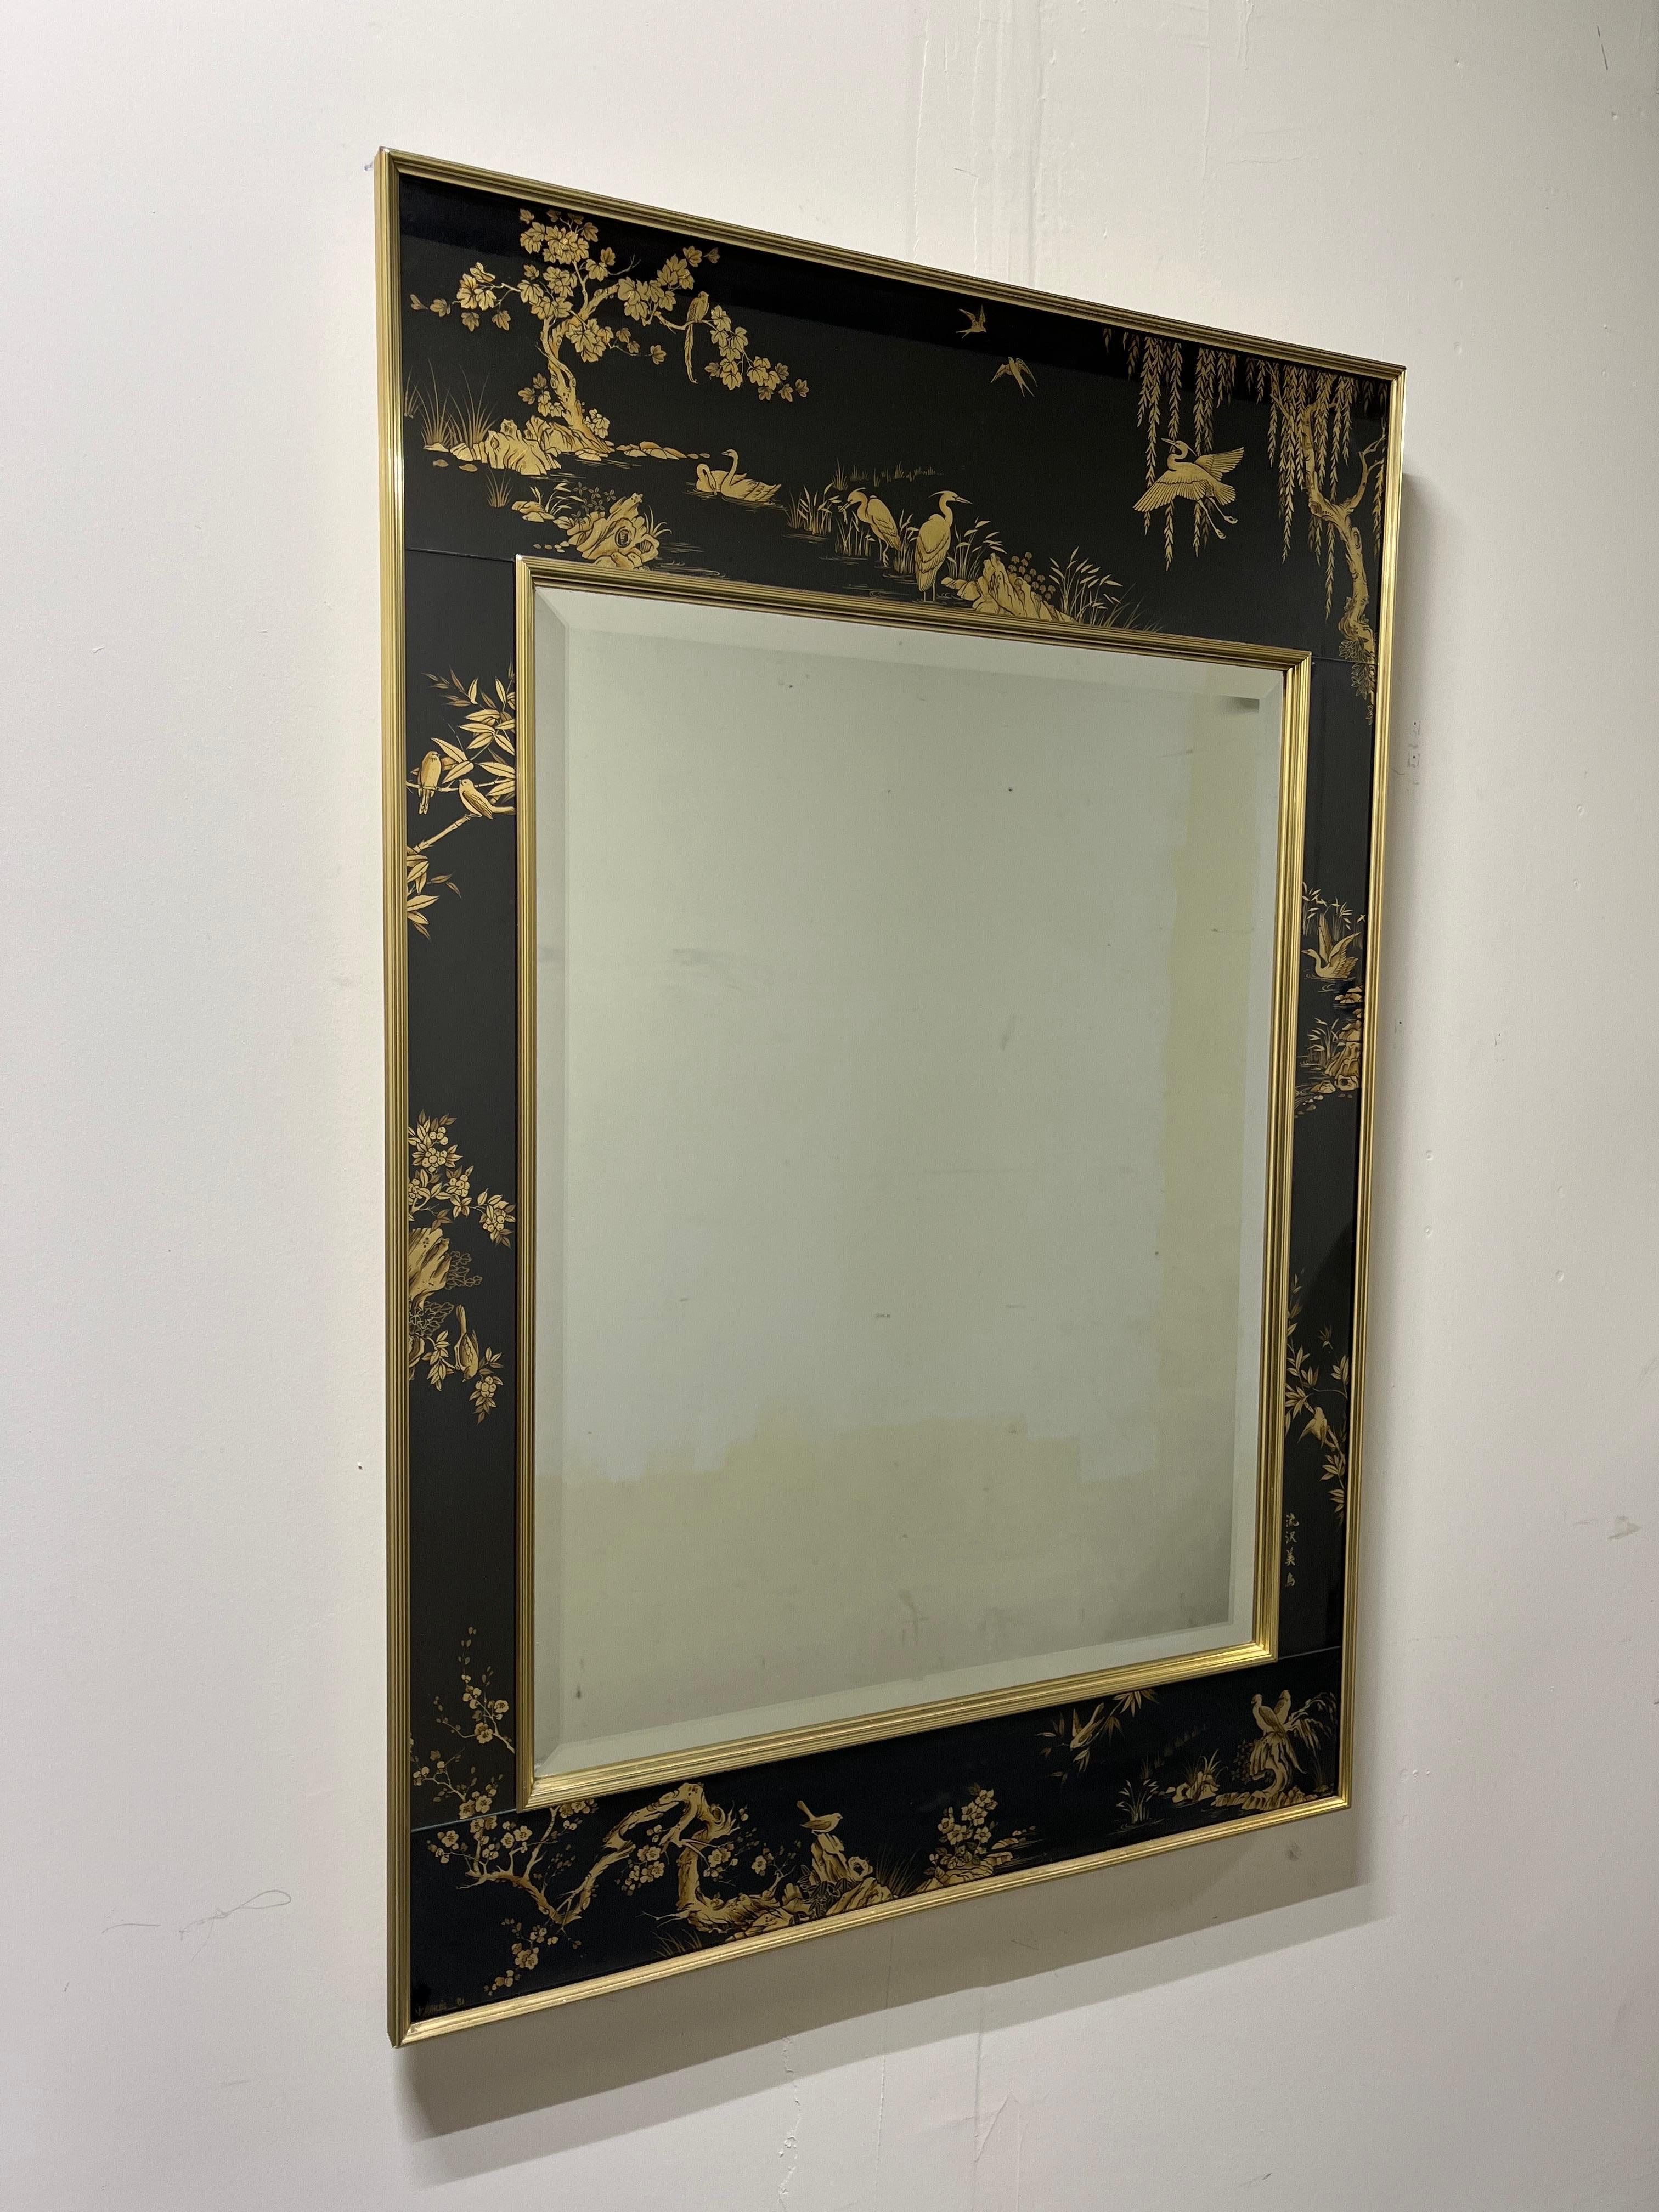 Miroir chinois à églomisé de Labarge avec un rare fond noir. Elles sont peintes à la main à l'envers au dos du cadre en verre et signées par l'artiste dans le coin inférieur. Le miroir est biseauté. 
En bordure de route vers NYC/Philly $300